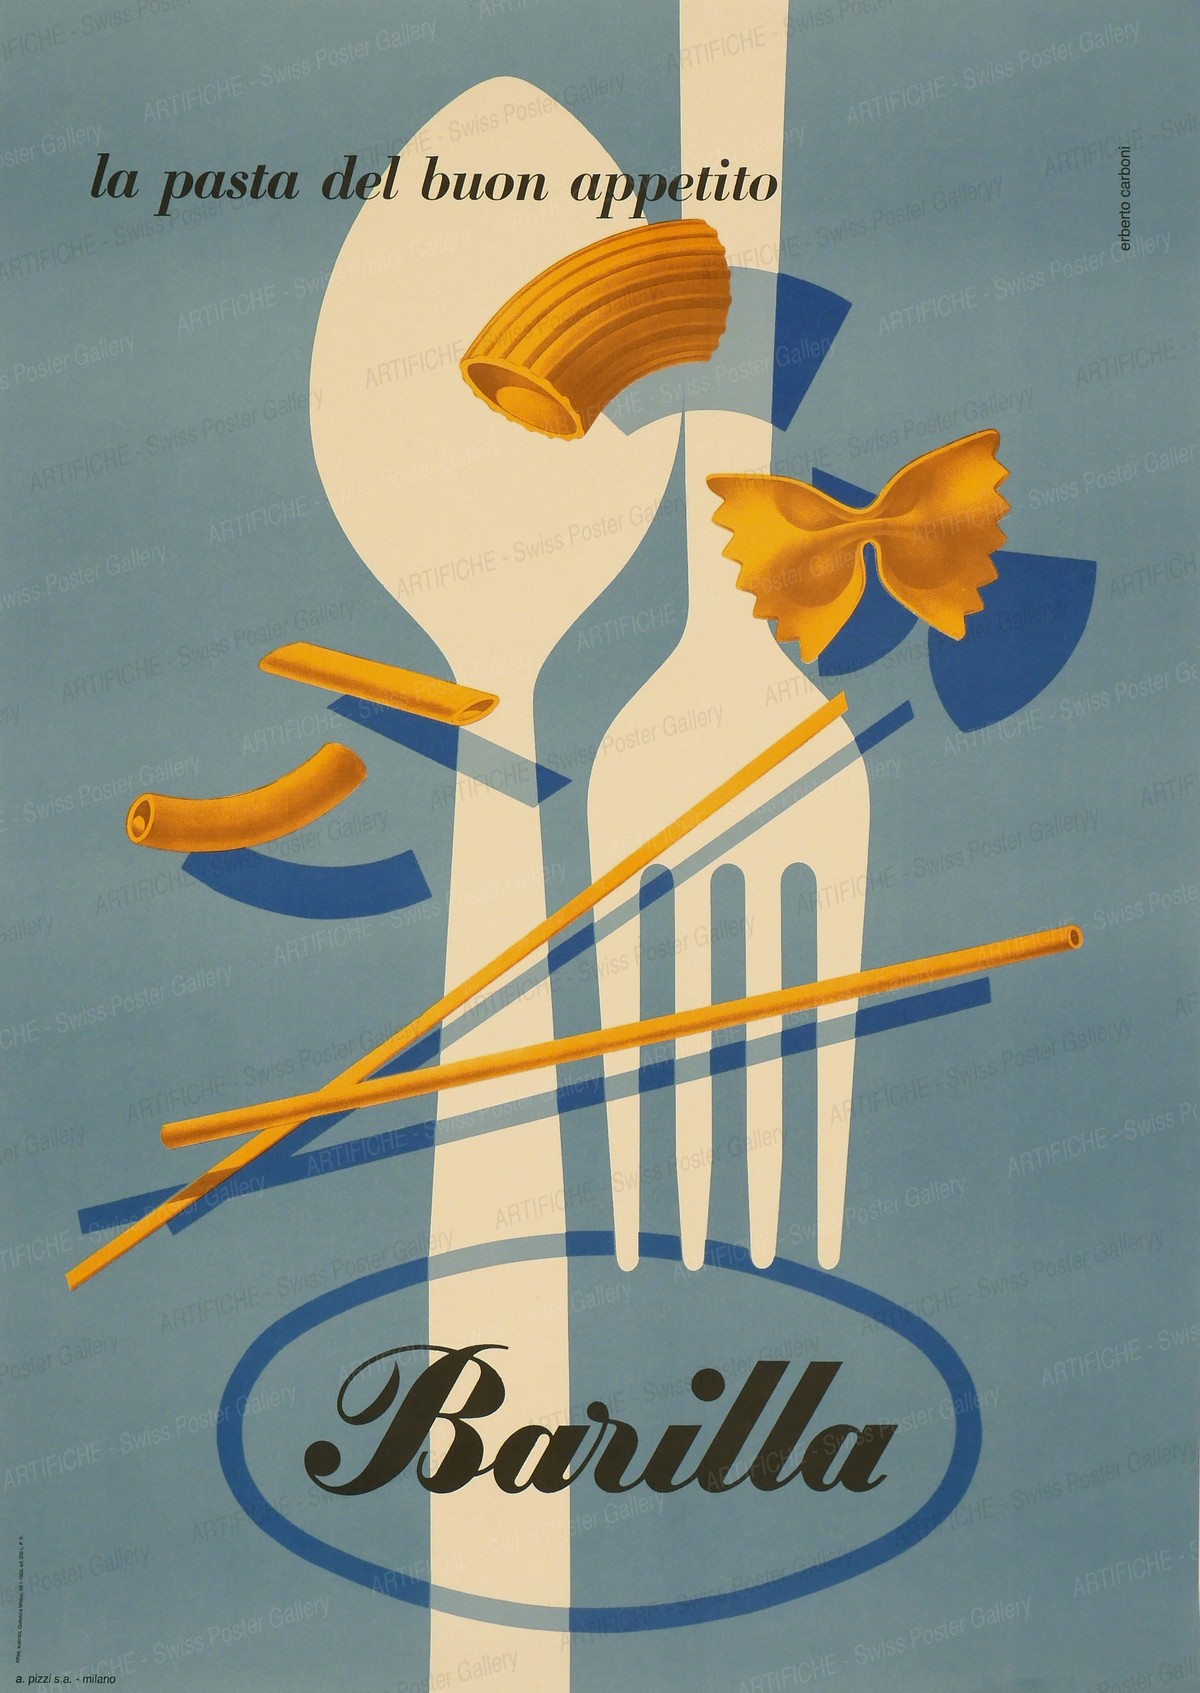 Barilla – the pasta of good appetite, Erberto Carboni